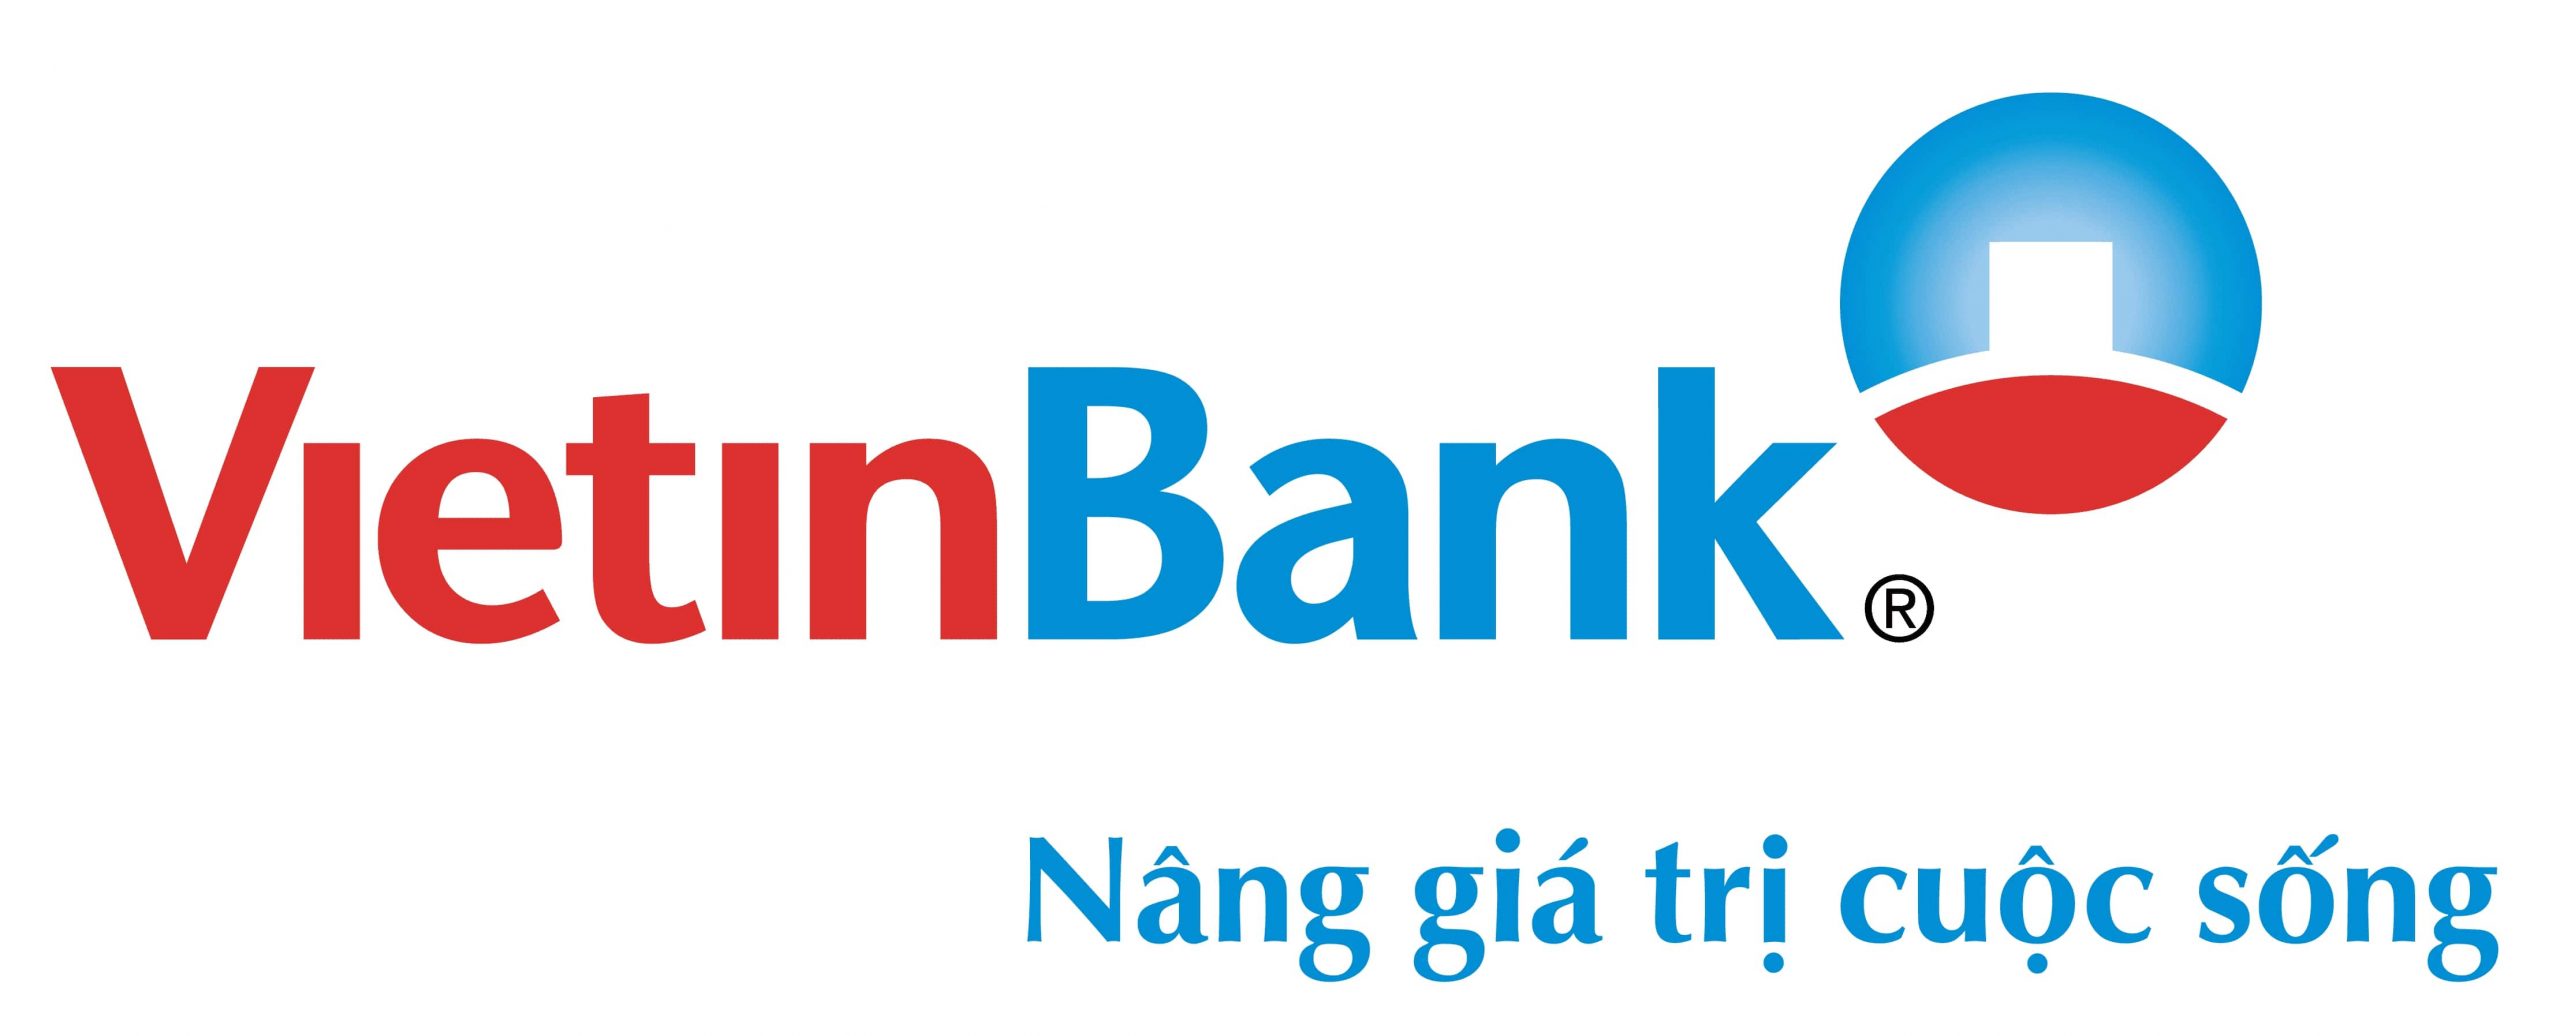 brasol.vn logo vietinbank viettinbank logo 01 scaled